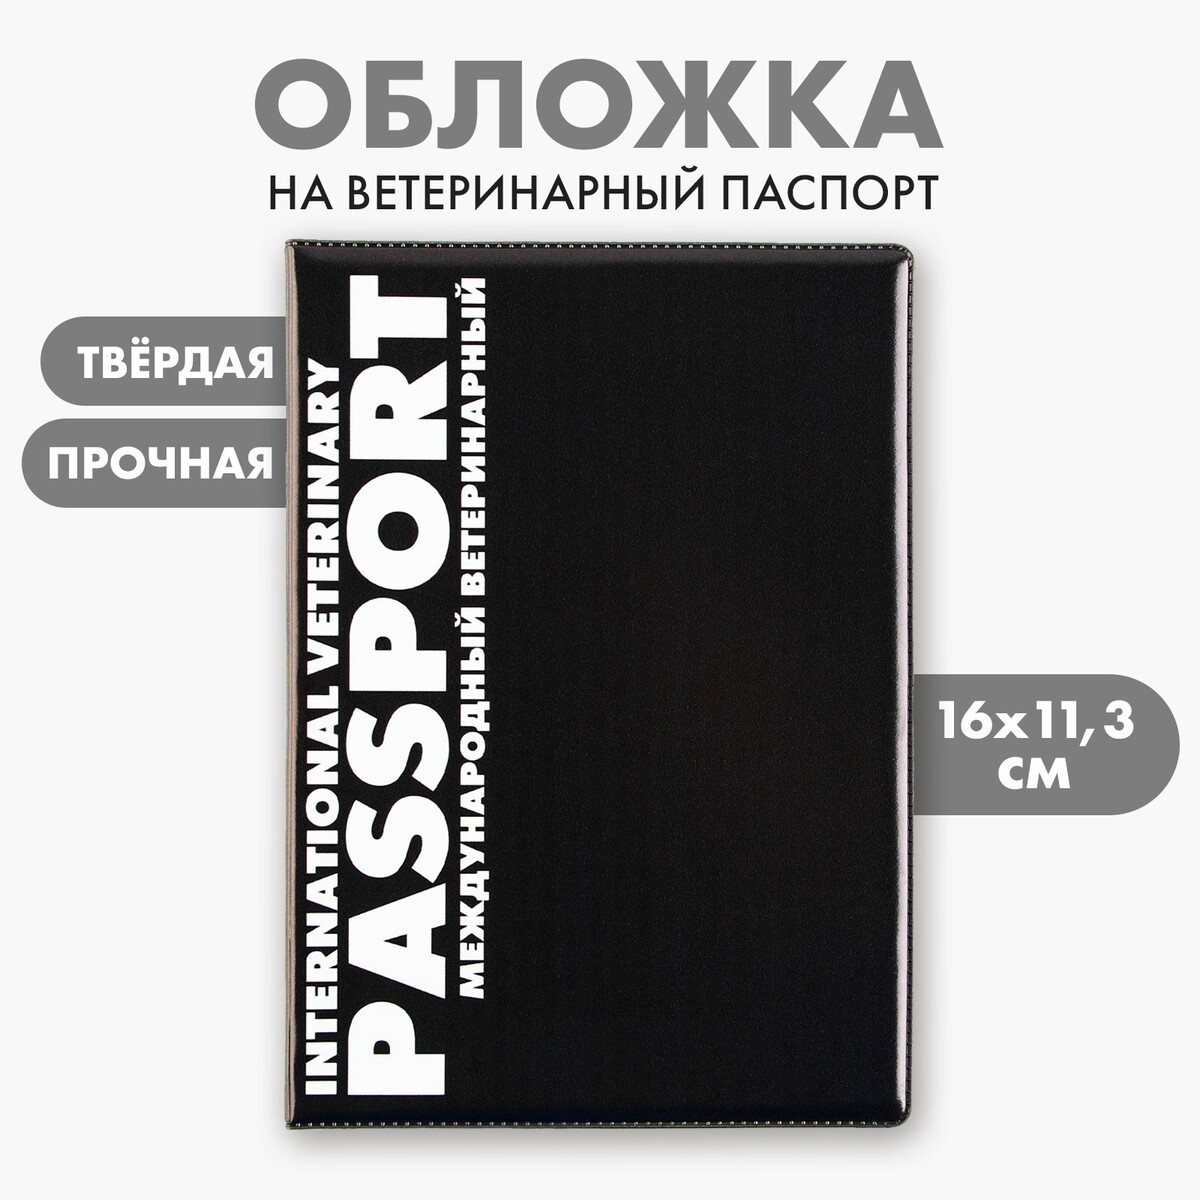 Обложка на ветеринарный паспорт универсальный обложка на паспорт мрамор серая